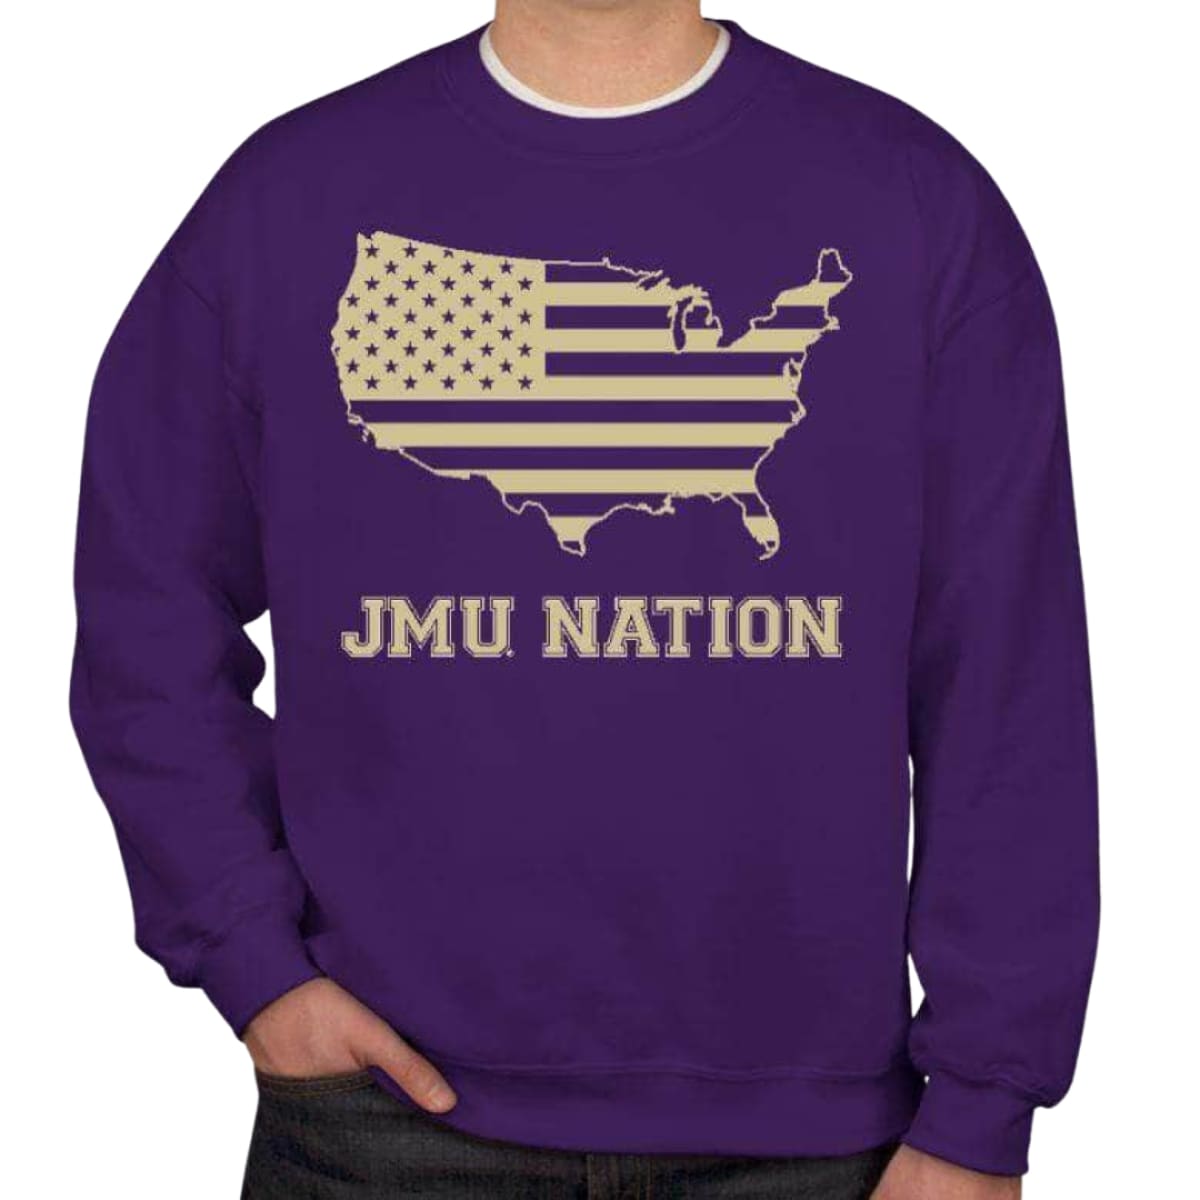 JMU Nation Men’s/Unisex Crew Neck Sweatshirt